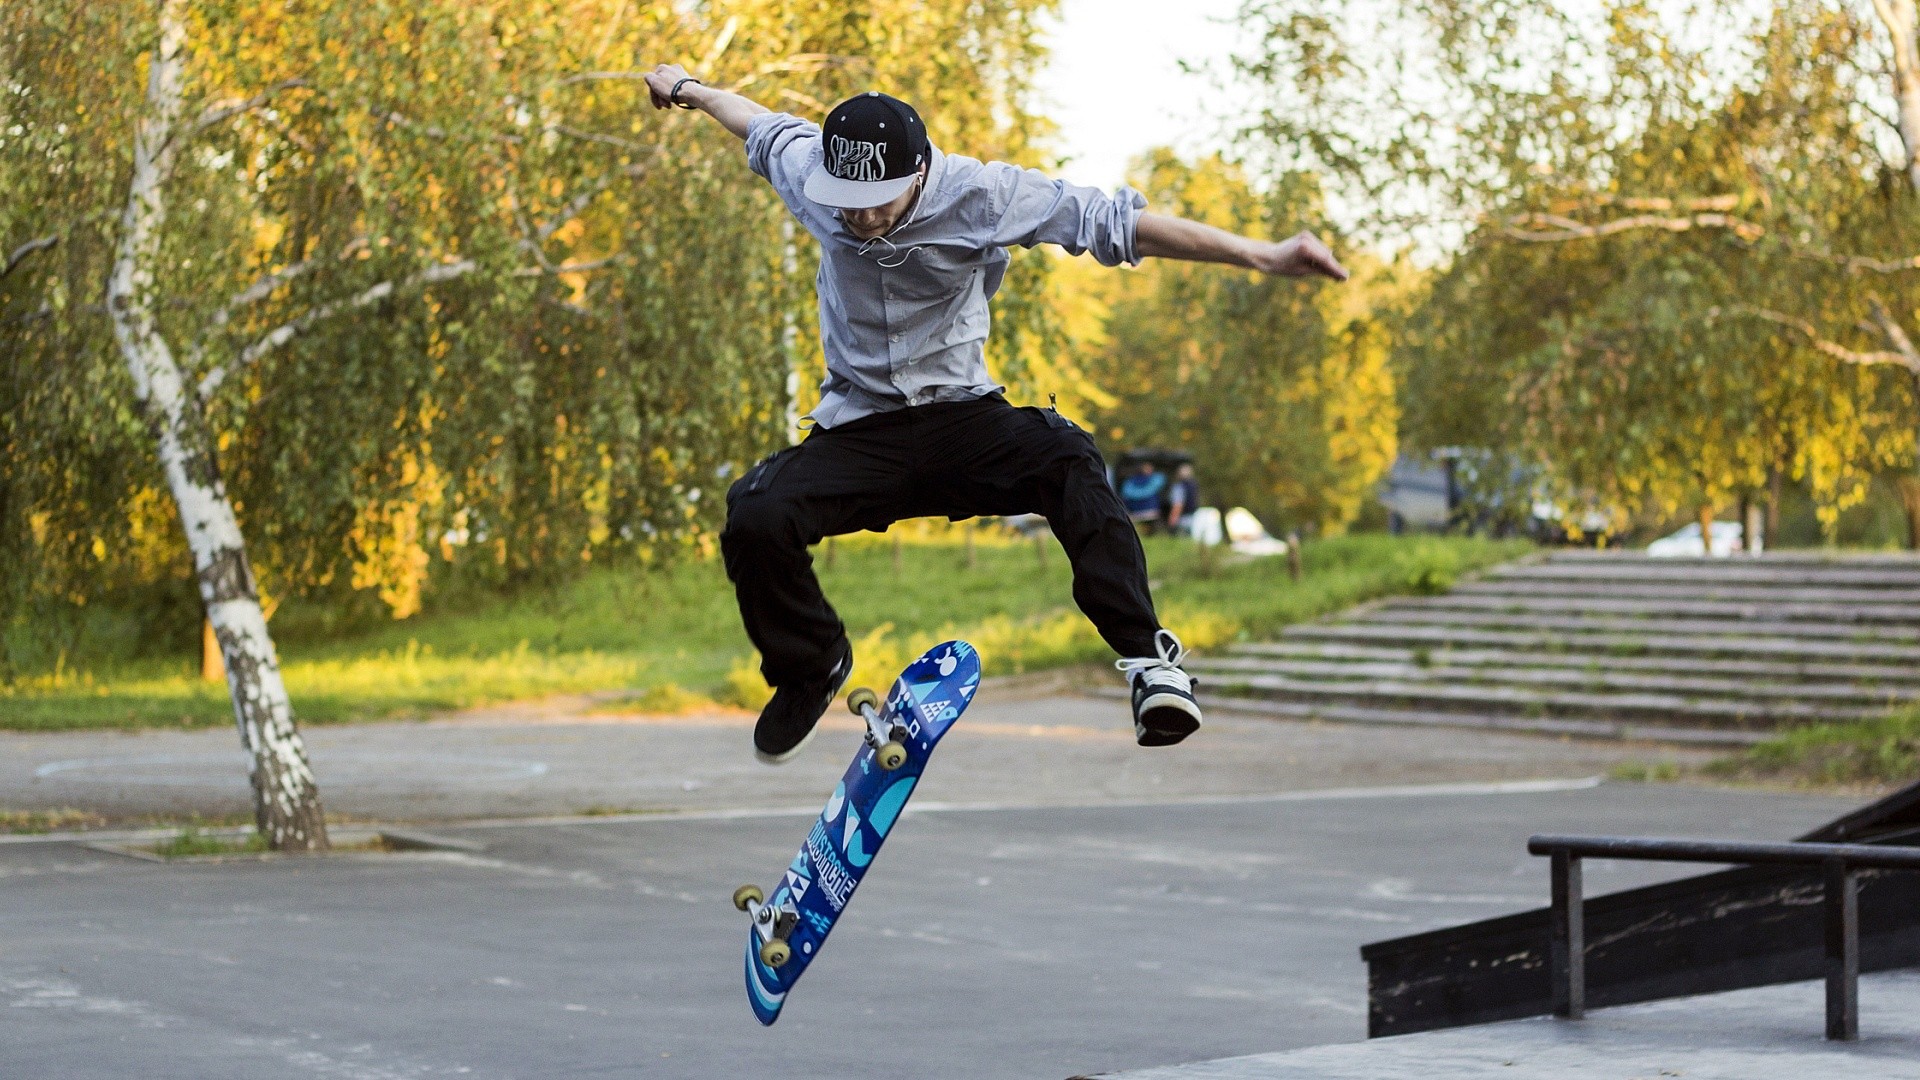 Cool Skateboard Wallpaper Desktop - Skateboard Background - HD Wallpaper 